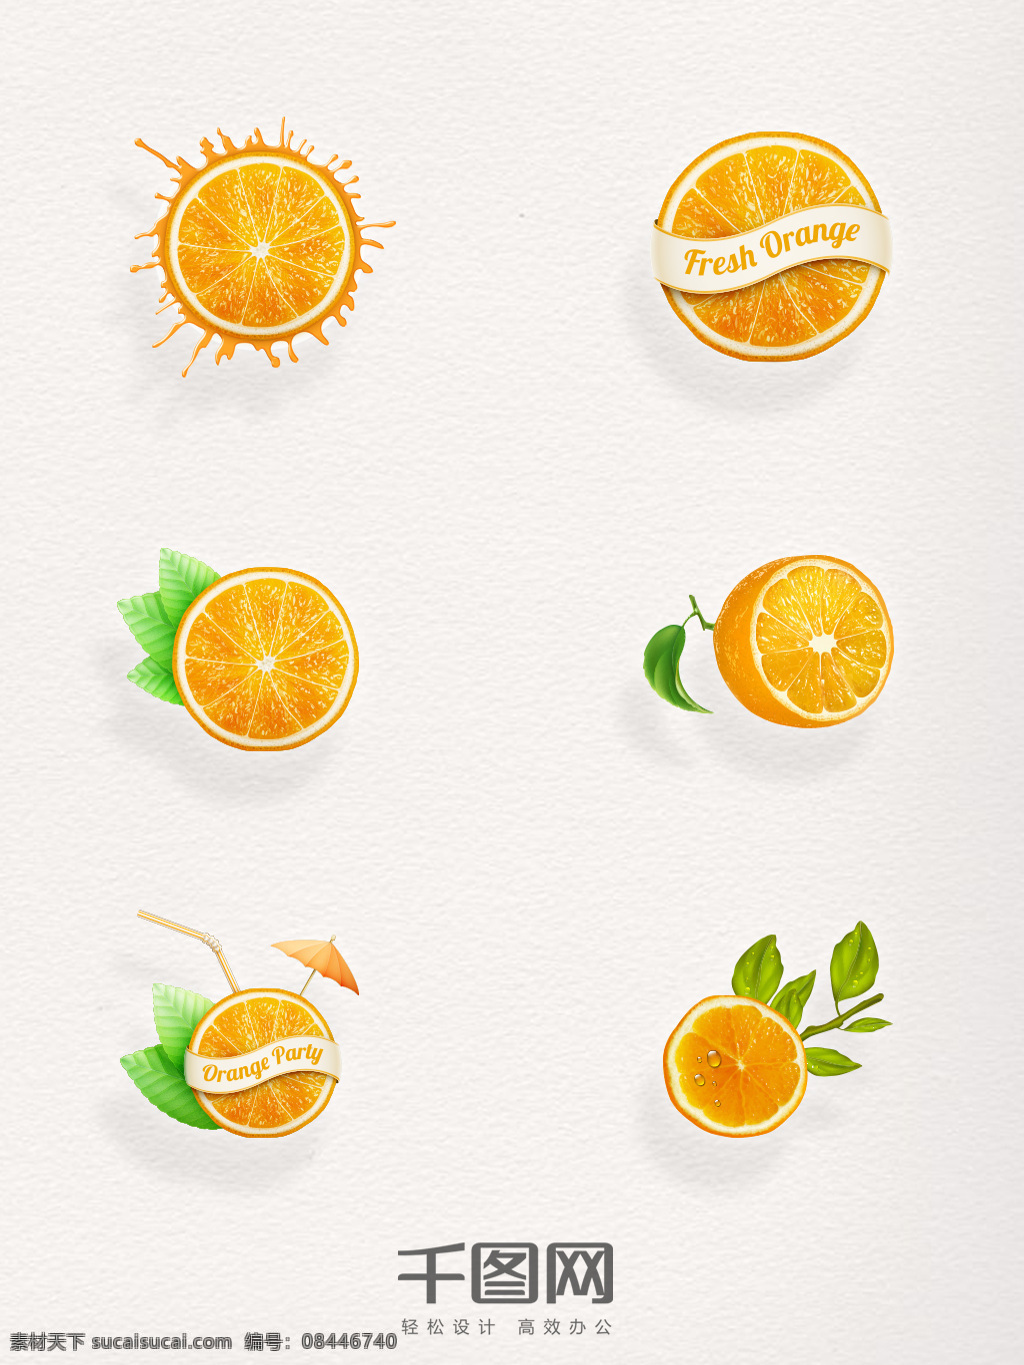 精致 切开 橙子 心想 事 橙 平安夜 水果 黄色橙子 切开的橙子 橙子片 绿叶橙子 吸管 小伞 平安夜水果 心想事橙